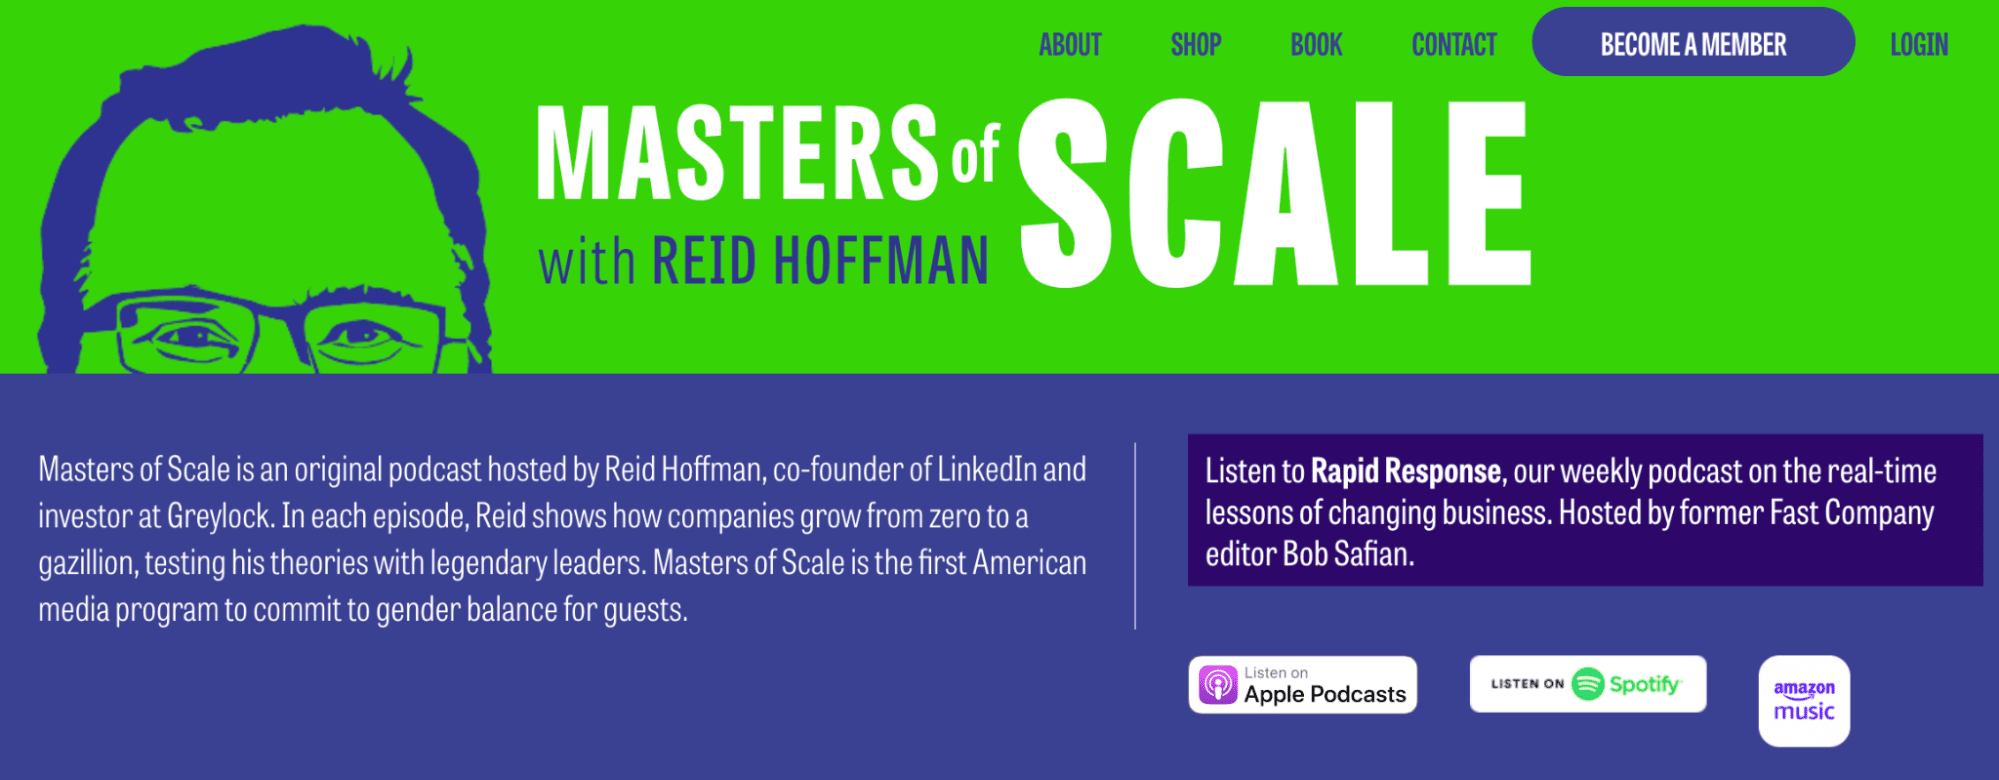 Reid Hoffman’s Masters of Scale